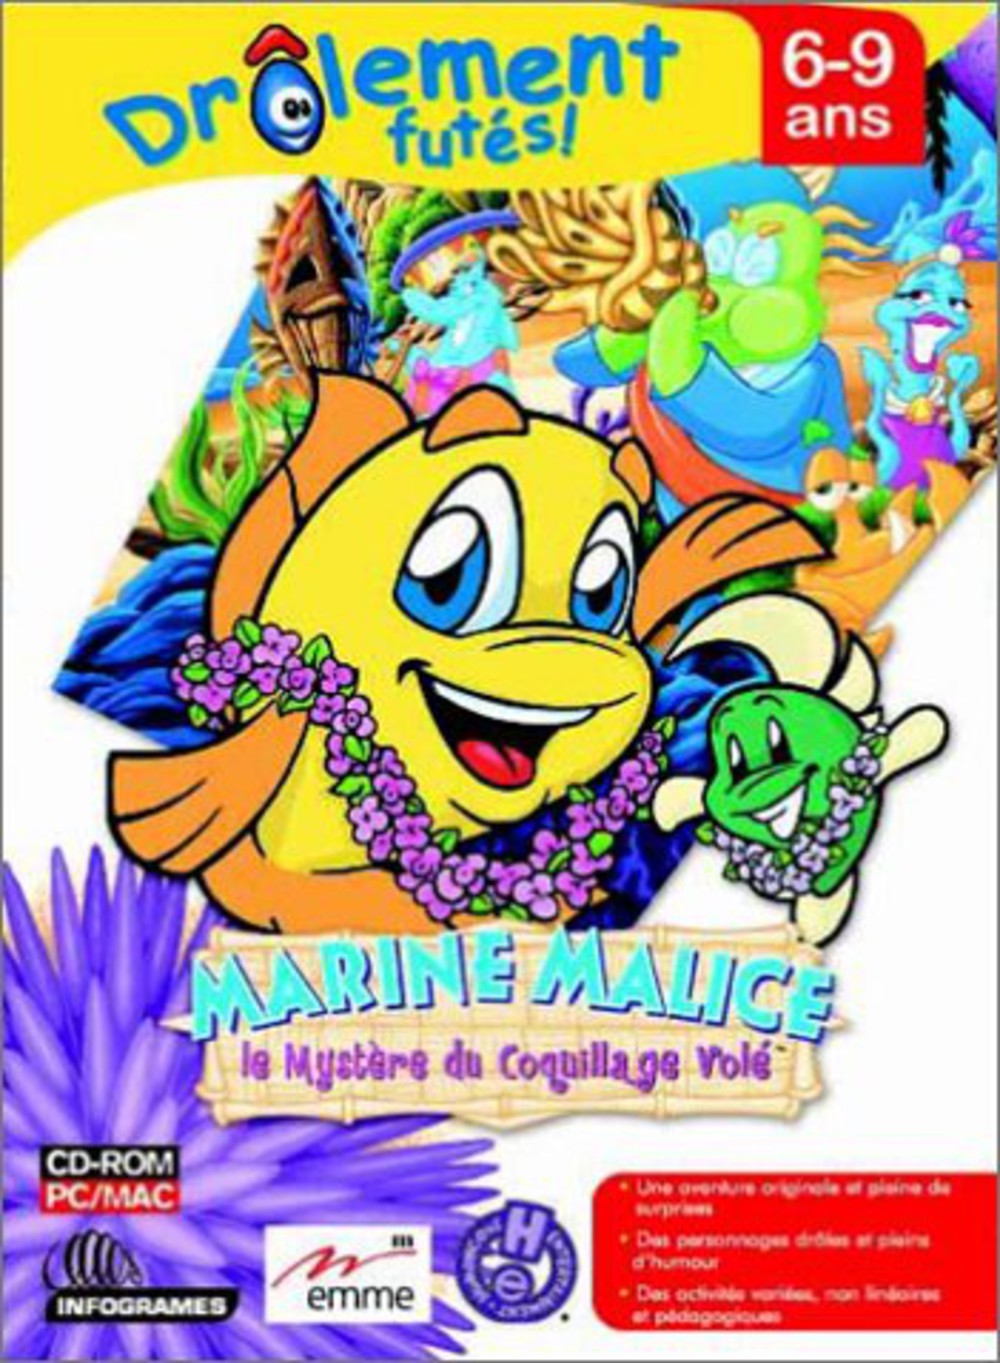 jaquette du jeu vidéo Marine Malice 3 : Le mystère du coquillage Volé